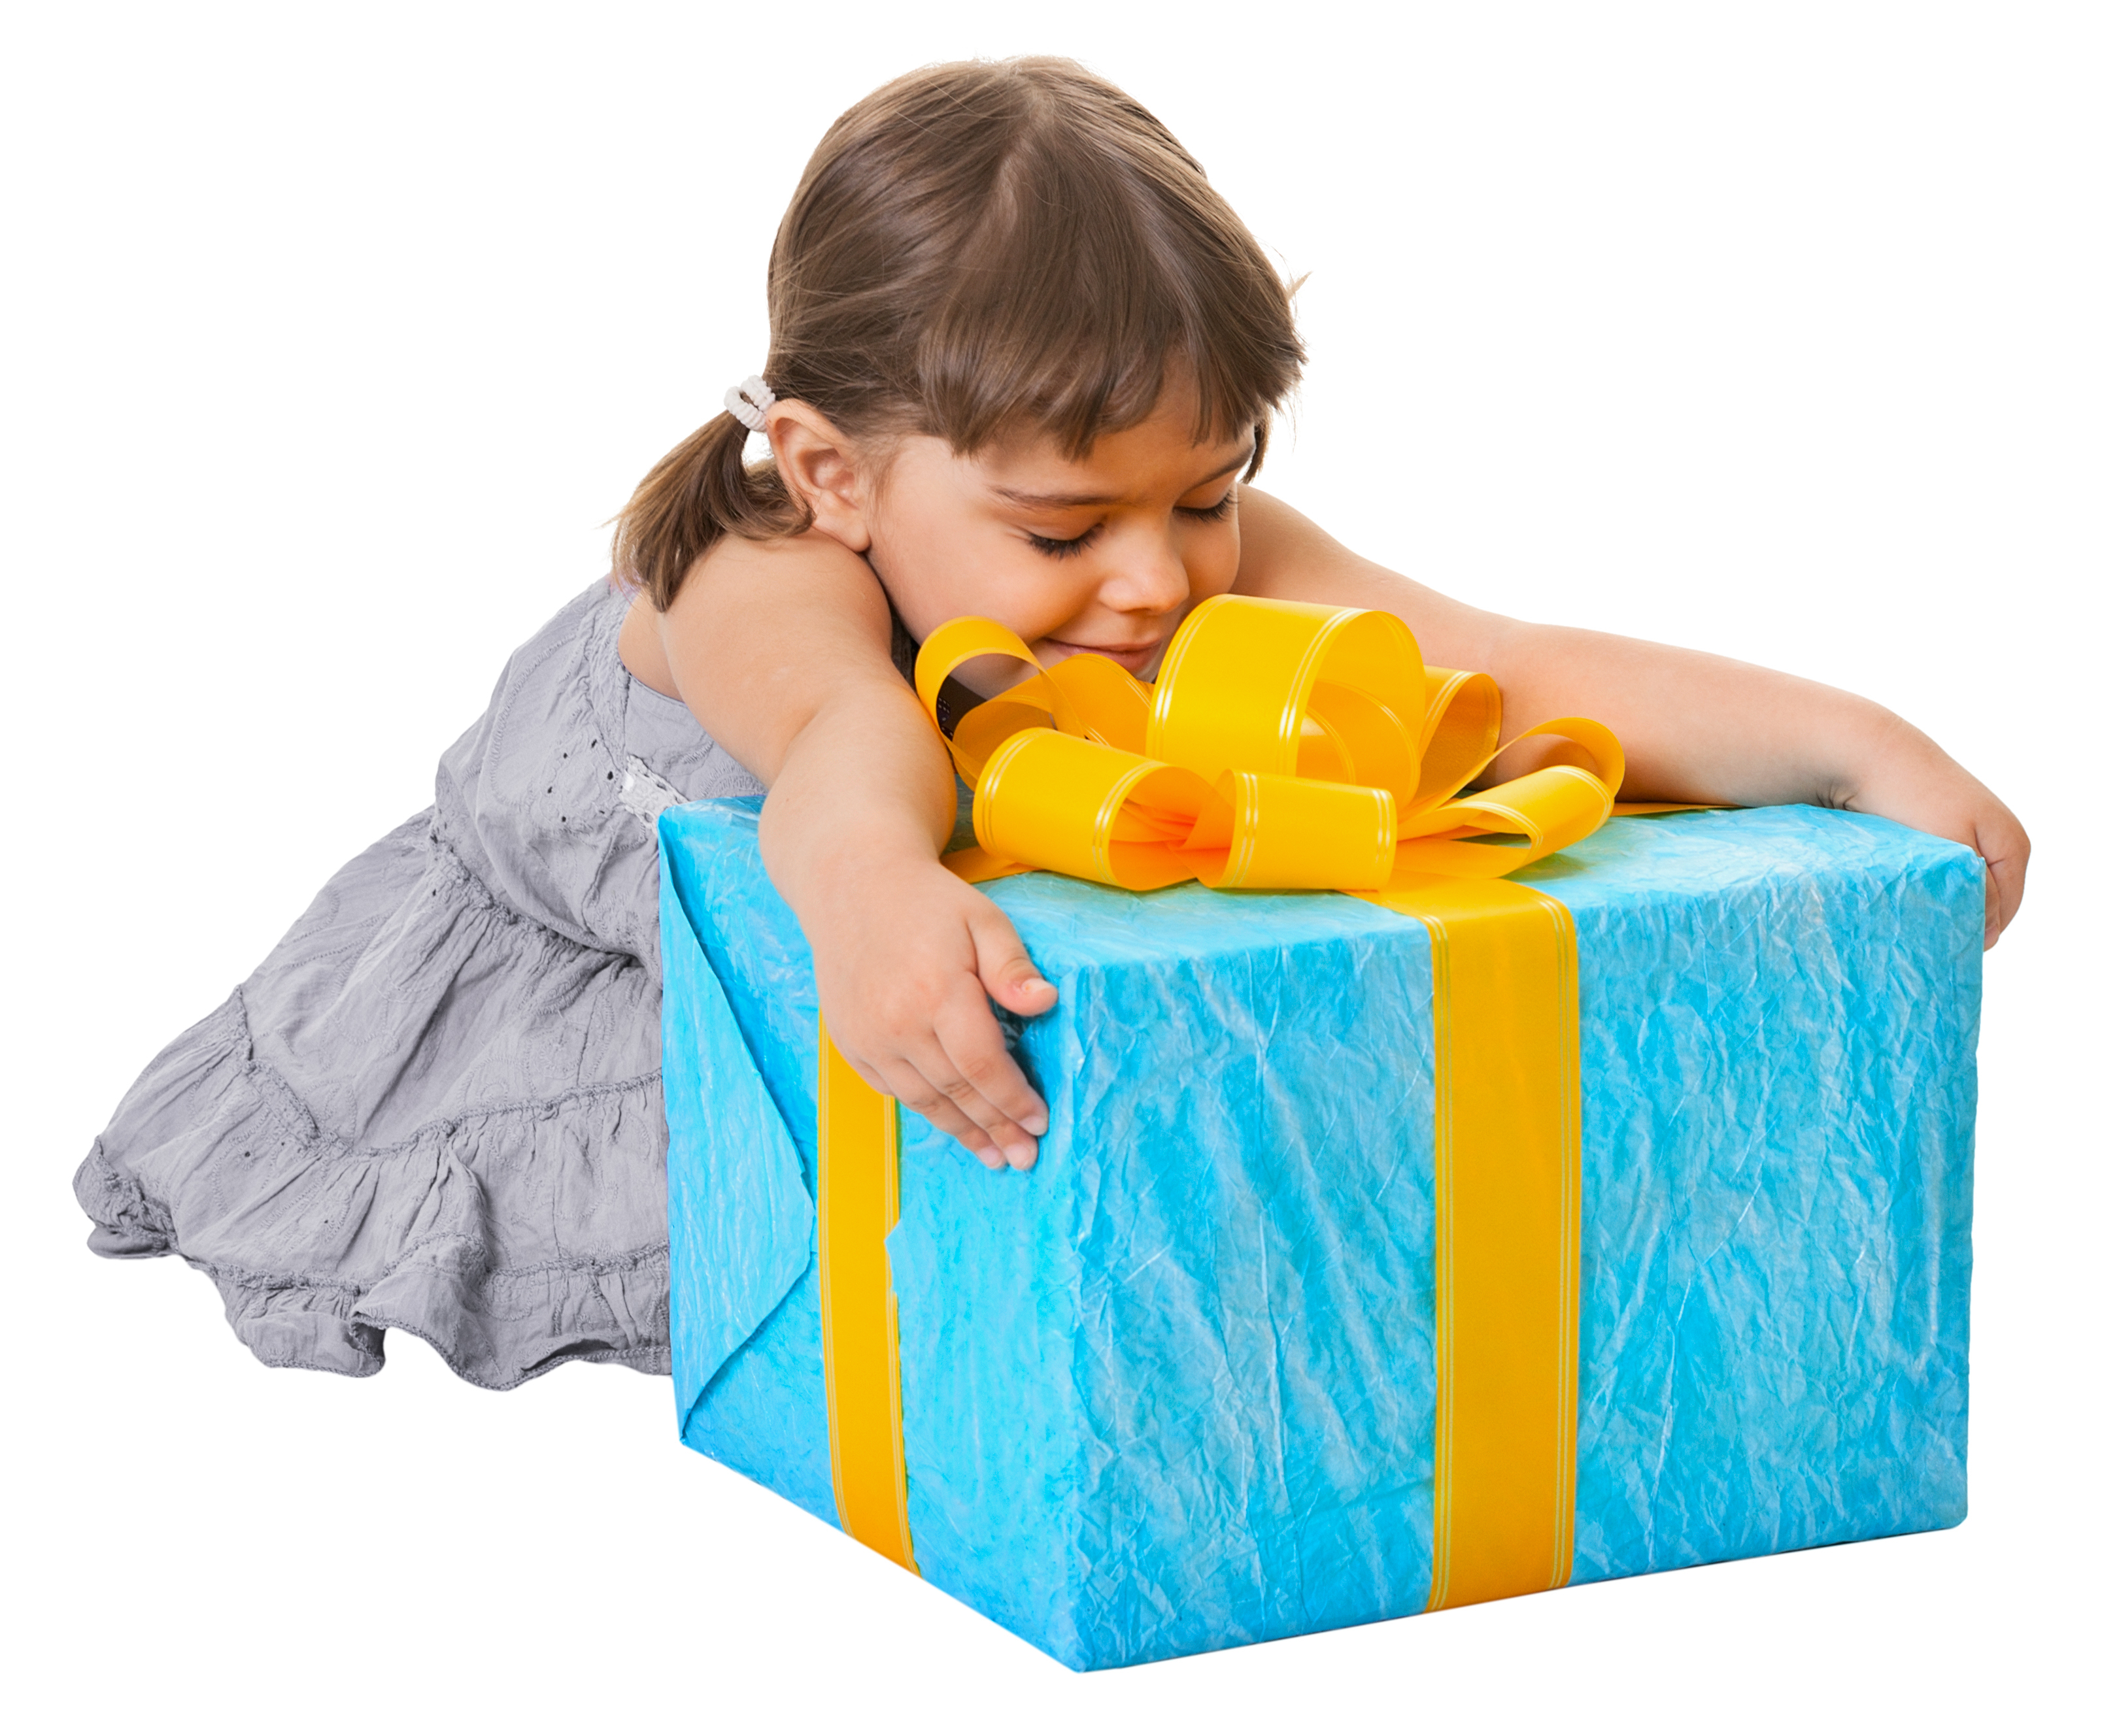 Children Gifts